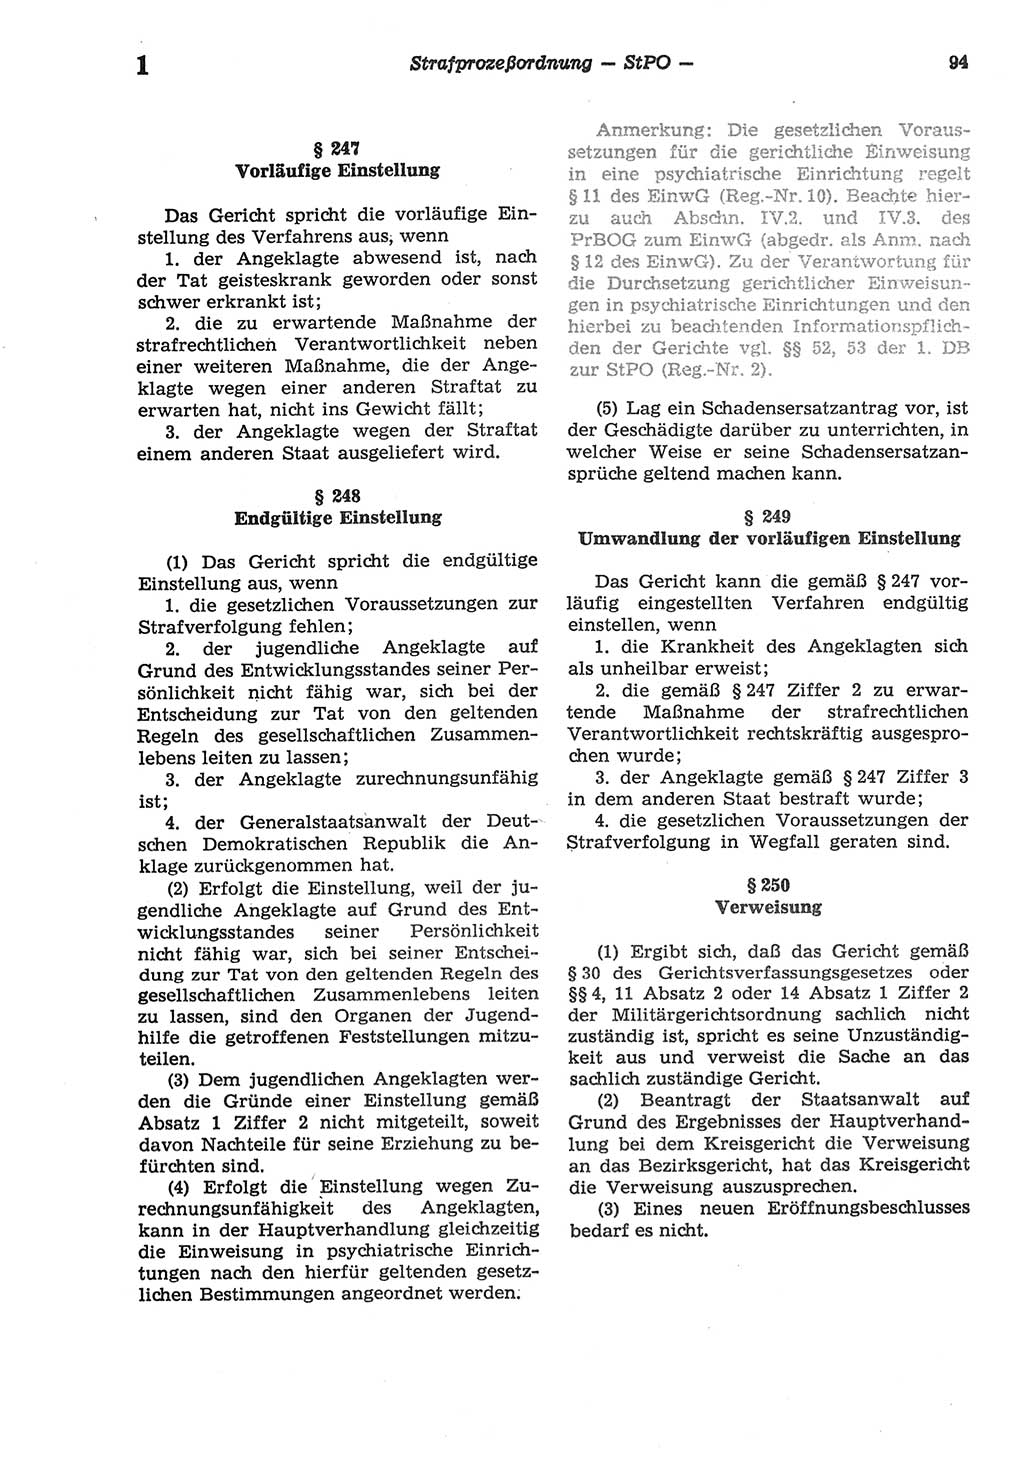 Strafprozeßordnung (StPO) der Deutschen Demokratischen Republik (DDR) sowie angrenzende Gesetze und Bestimmungen 1977, Seite 94 (StPO DDR Ges. Best. 1977, S. 94)